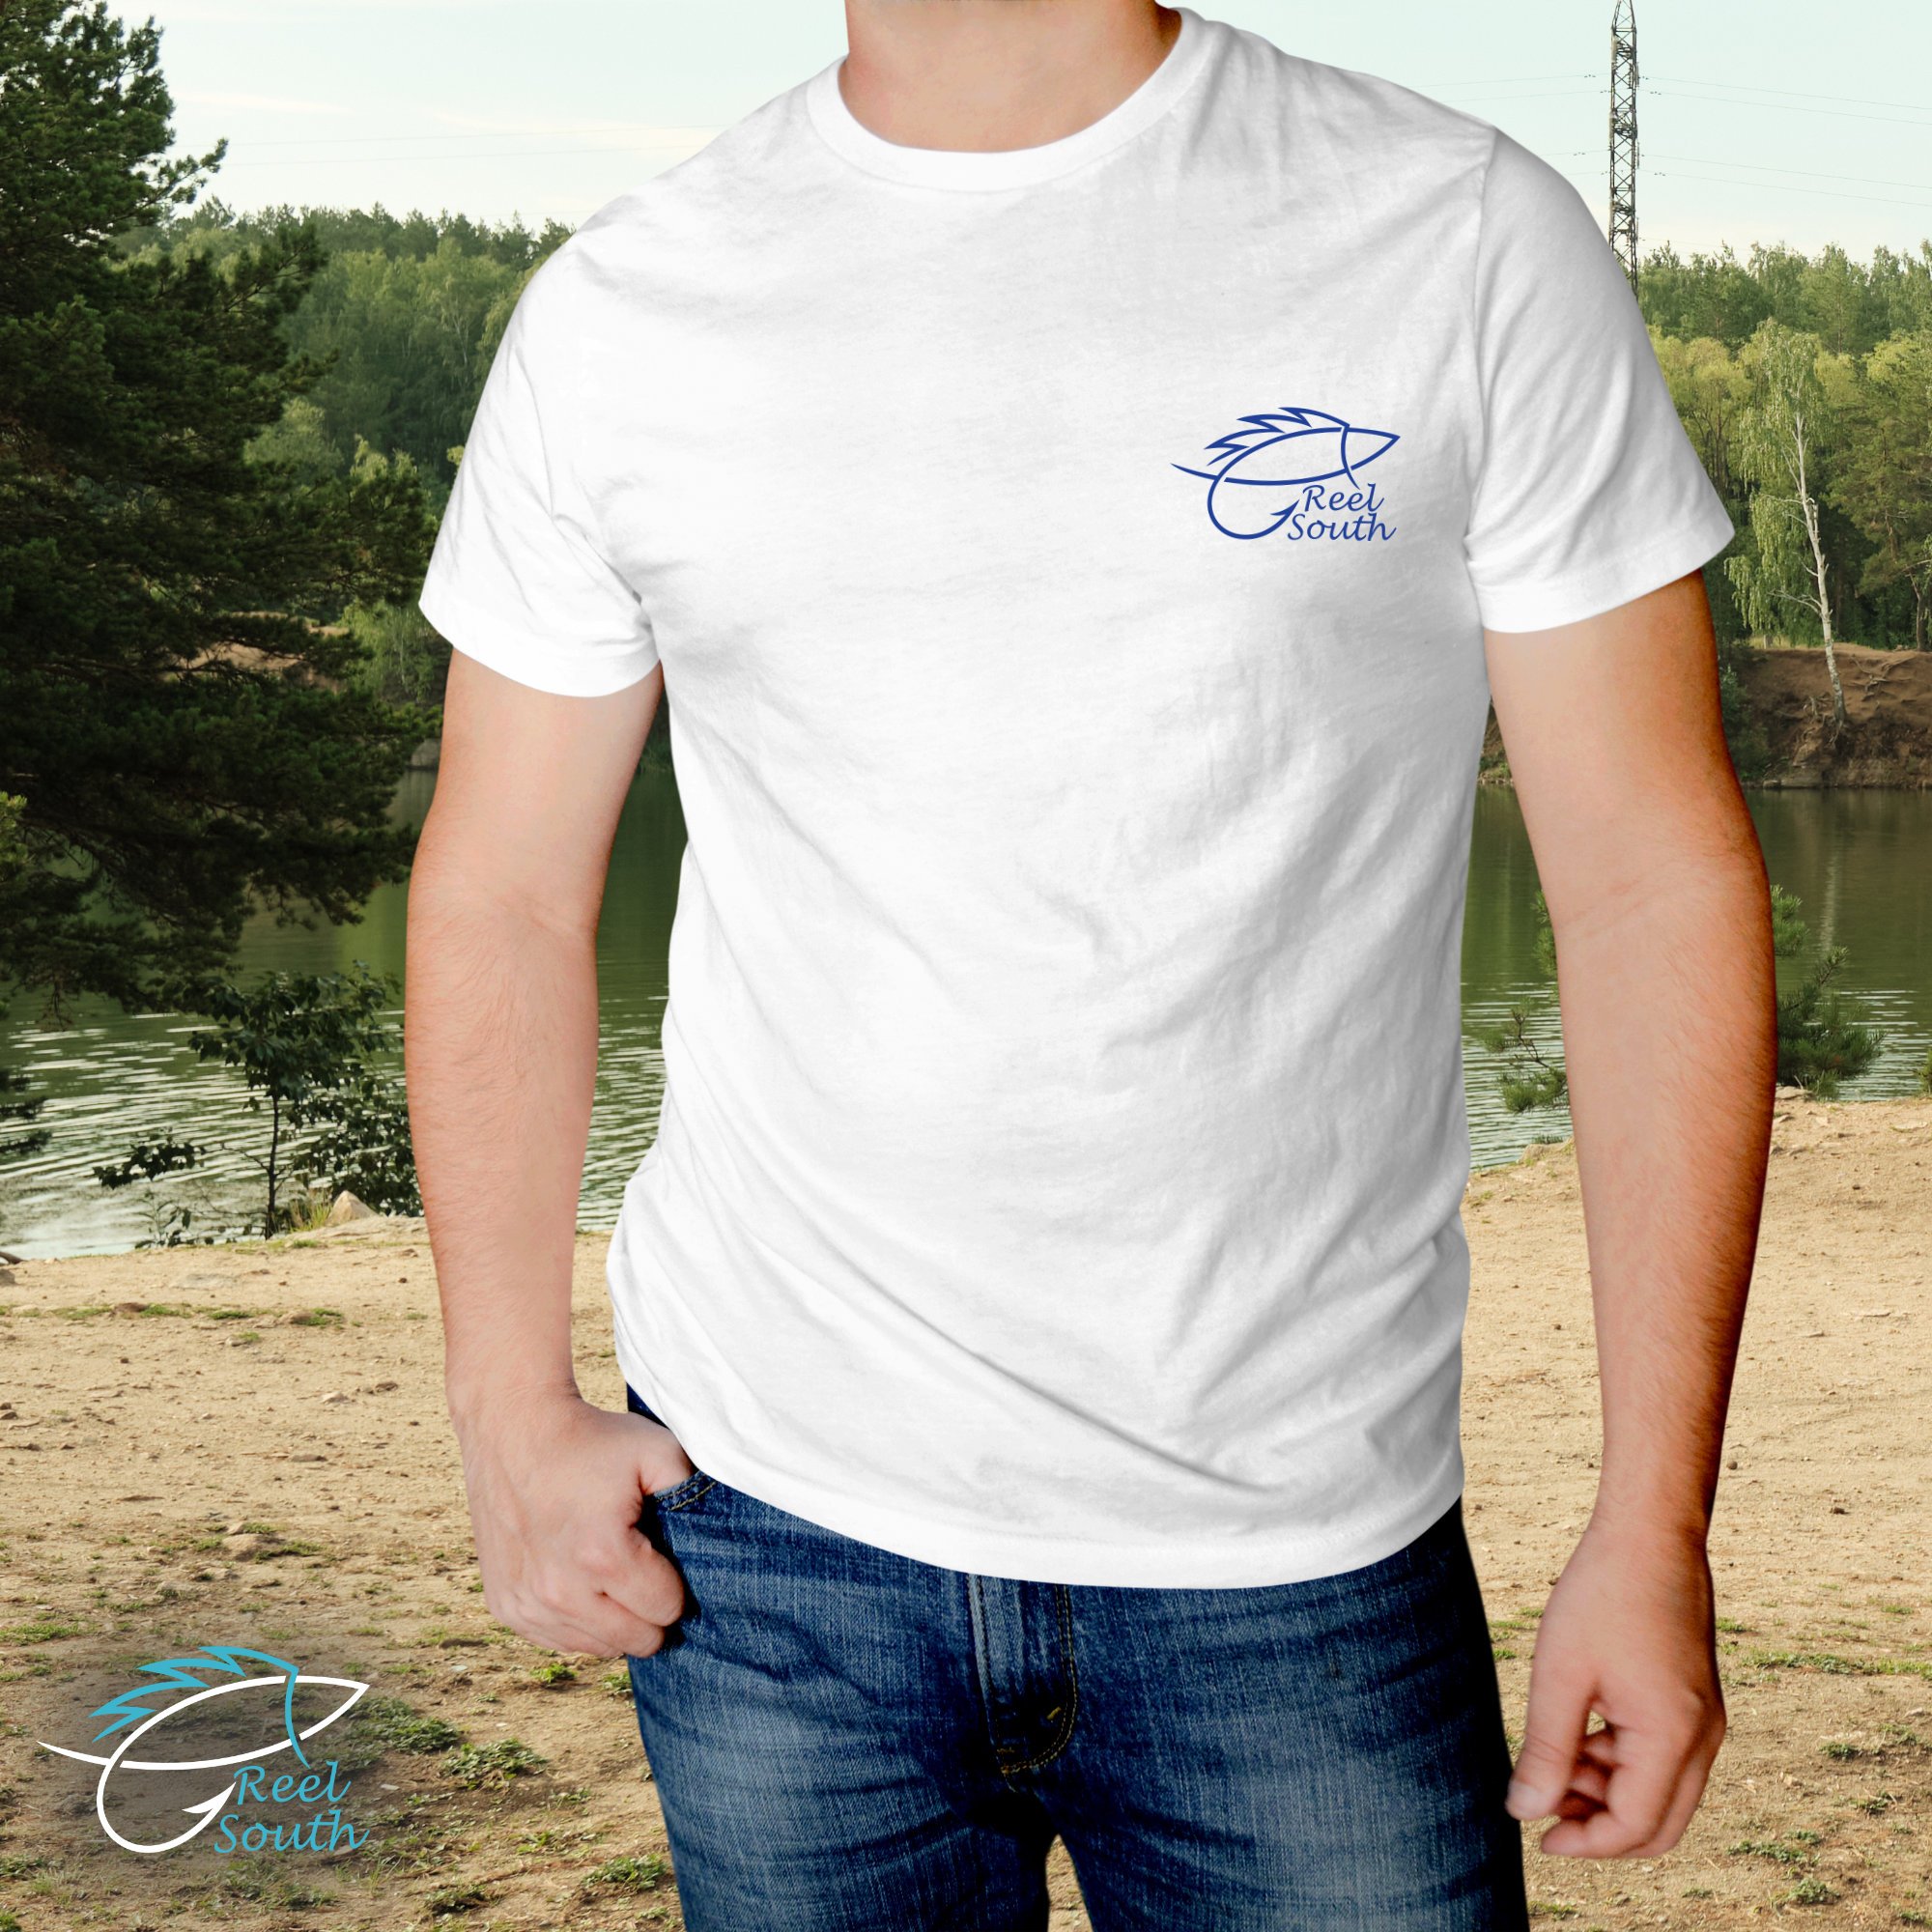 Reel South Kentucky Bass T-Shirt (Blue/Gray)